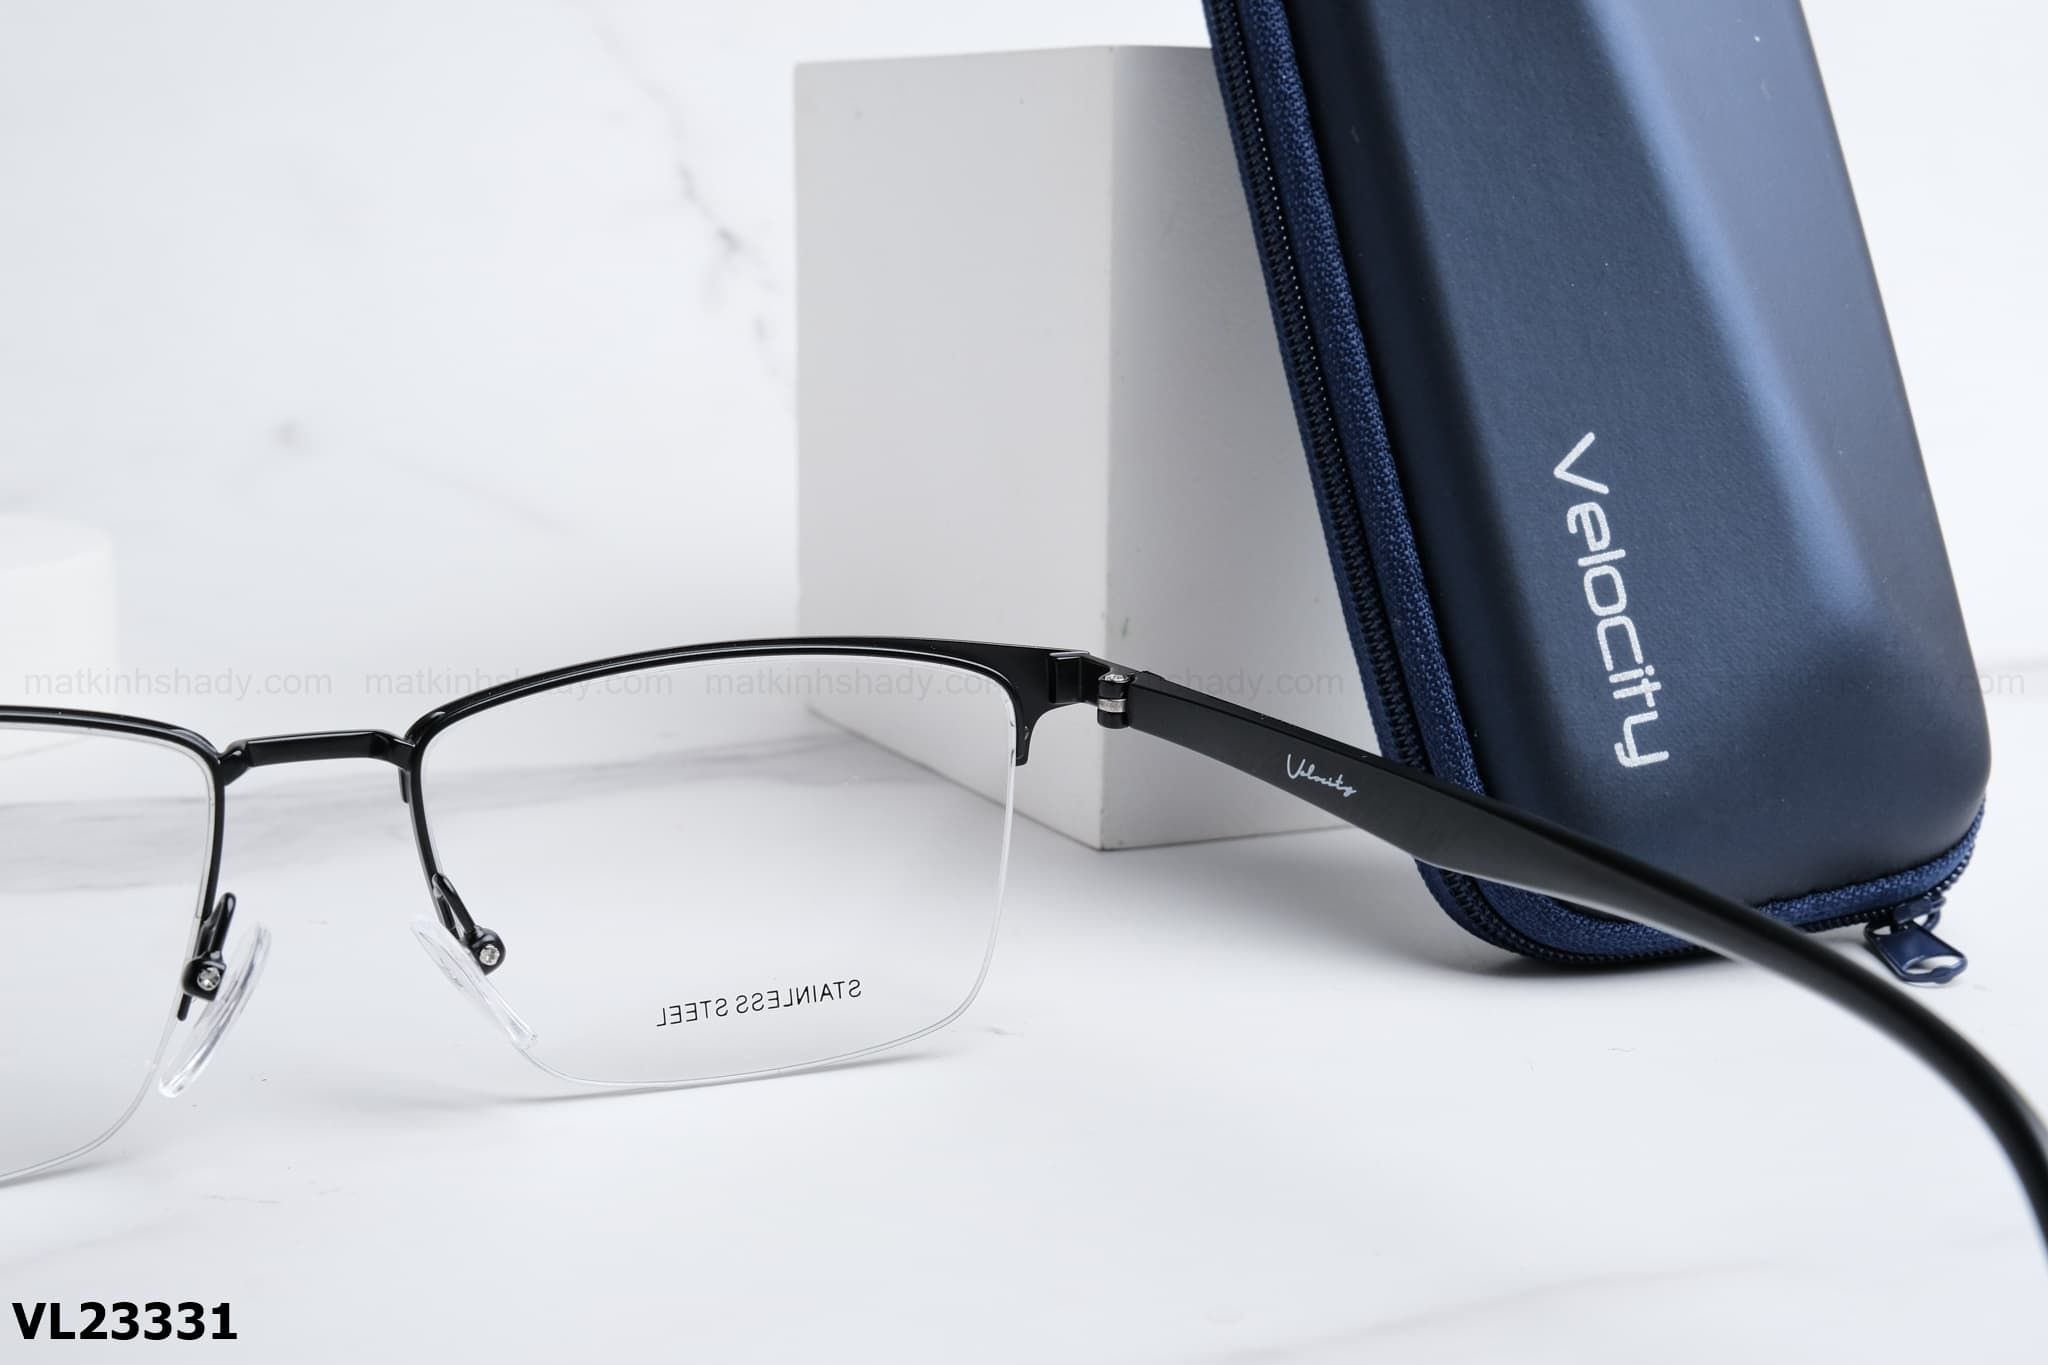  Velocity Eyewear - Glasses - VL23331 